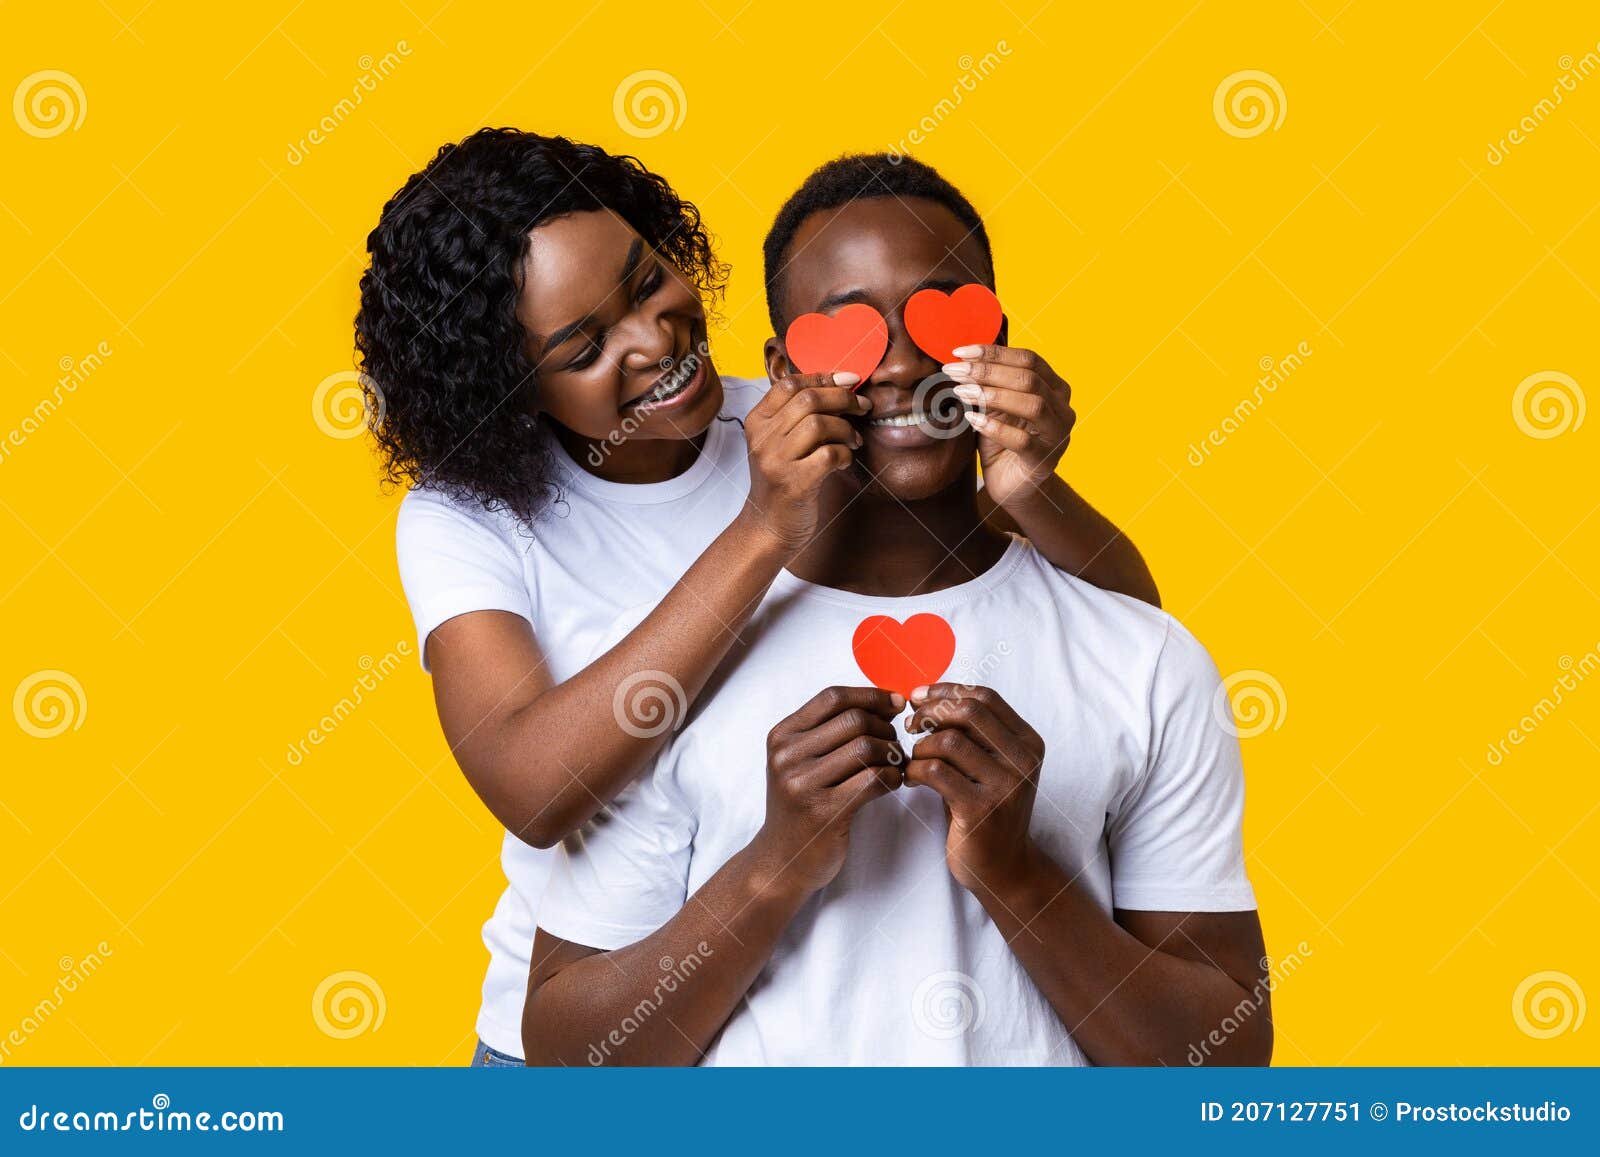 Люблю чернокожих. Муж и жена каверы. Девка сидит на деване око неё негры. Afro man hug behind bbc.